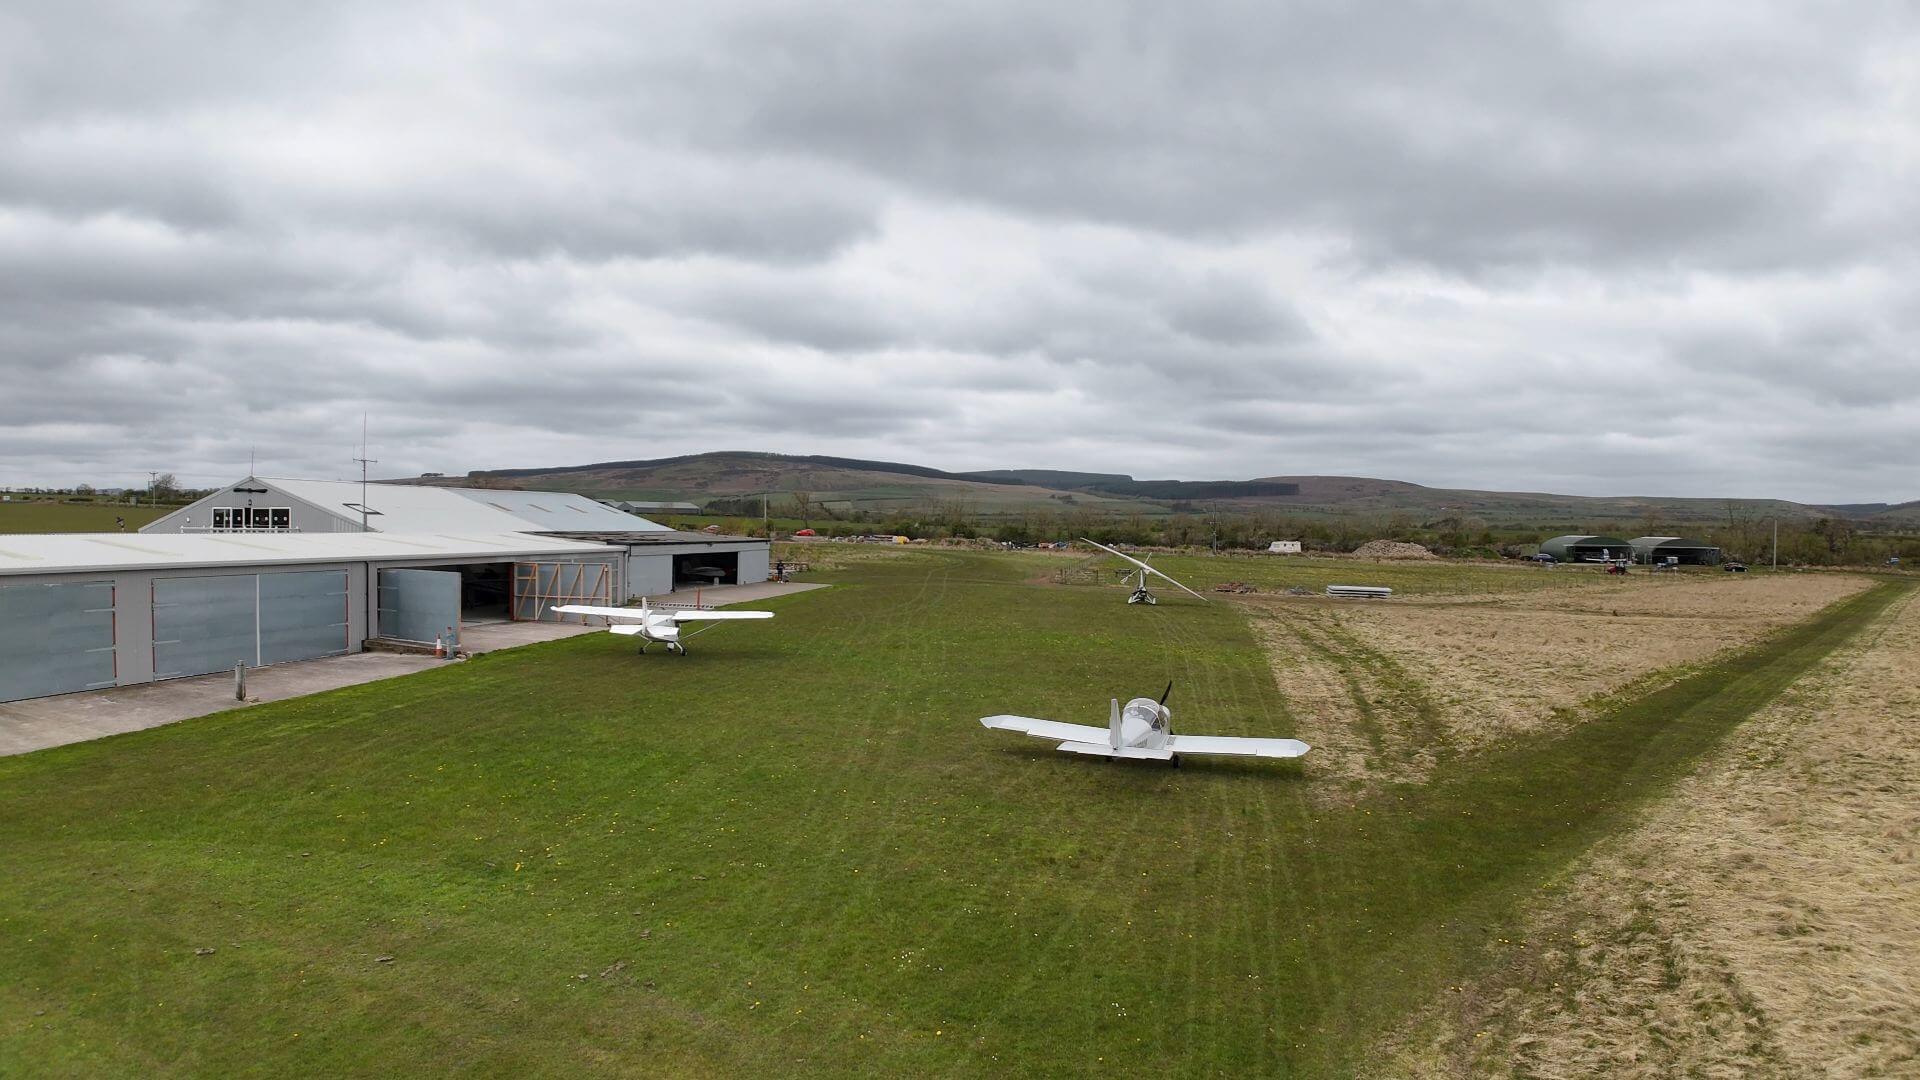 atheys-moor-flying-school-hangar